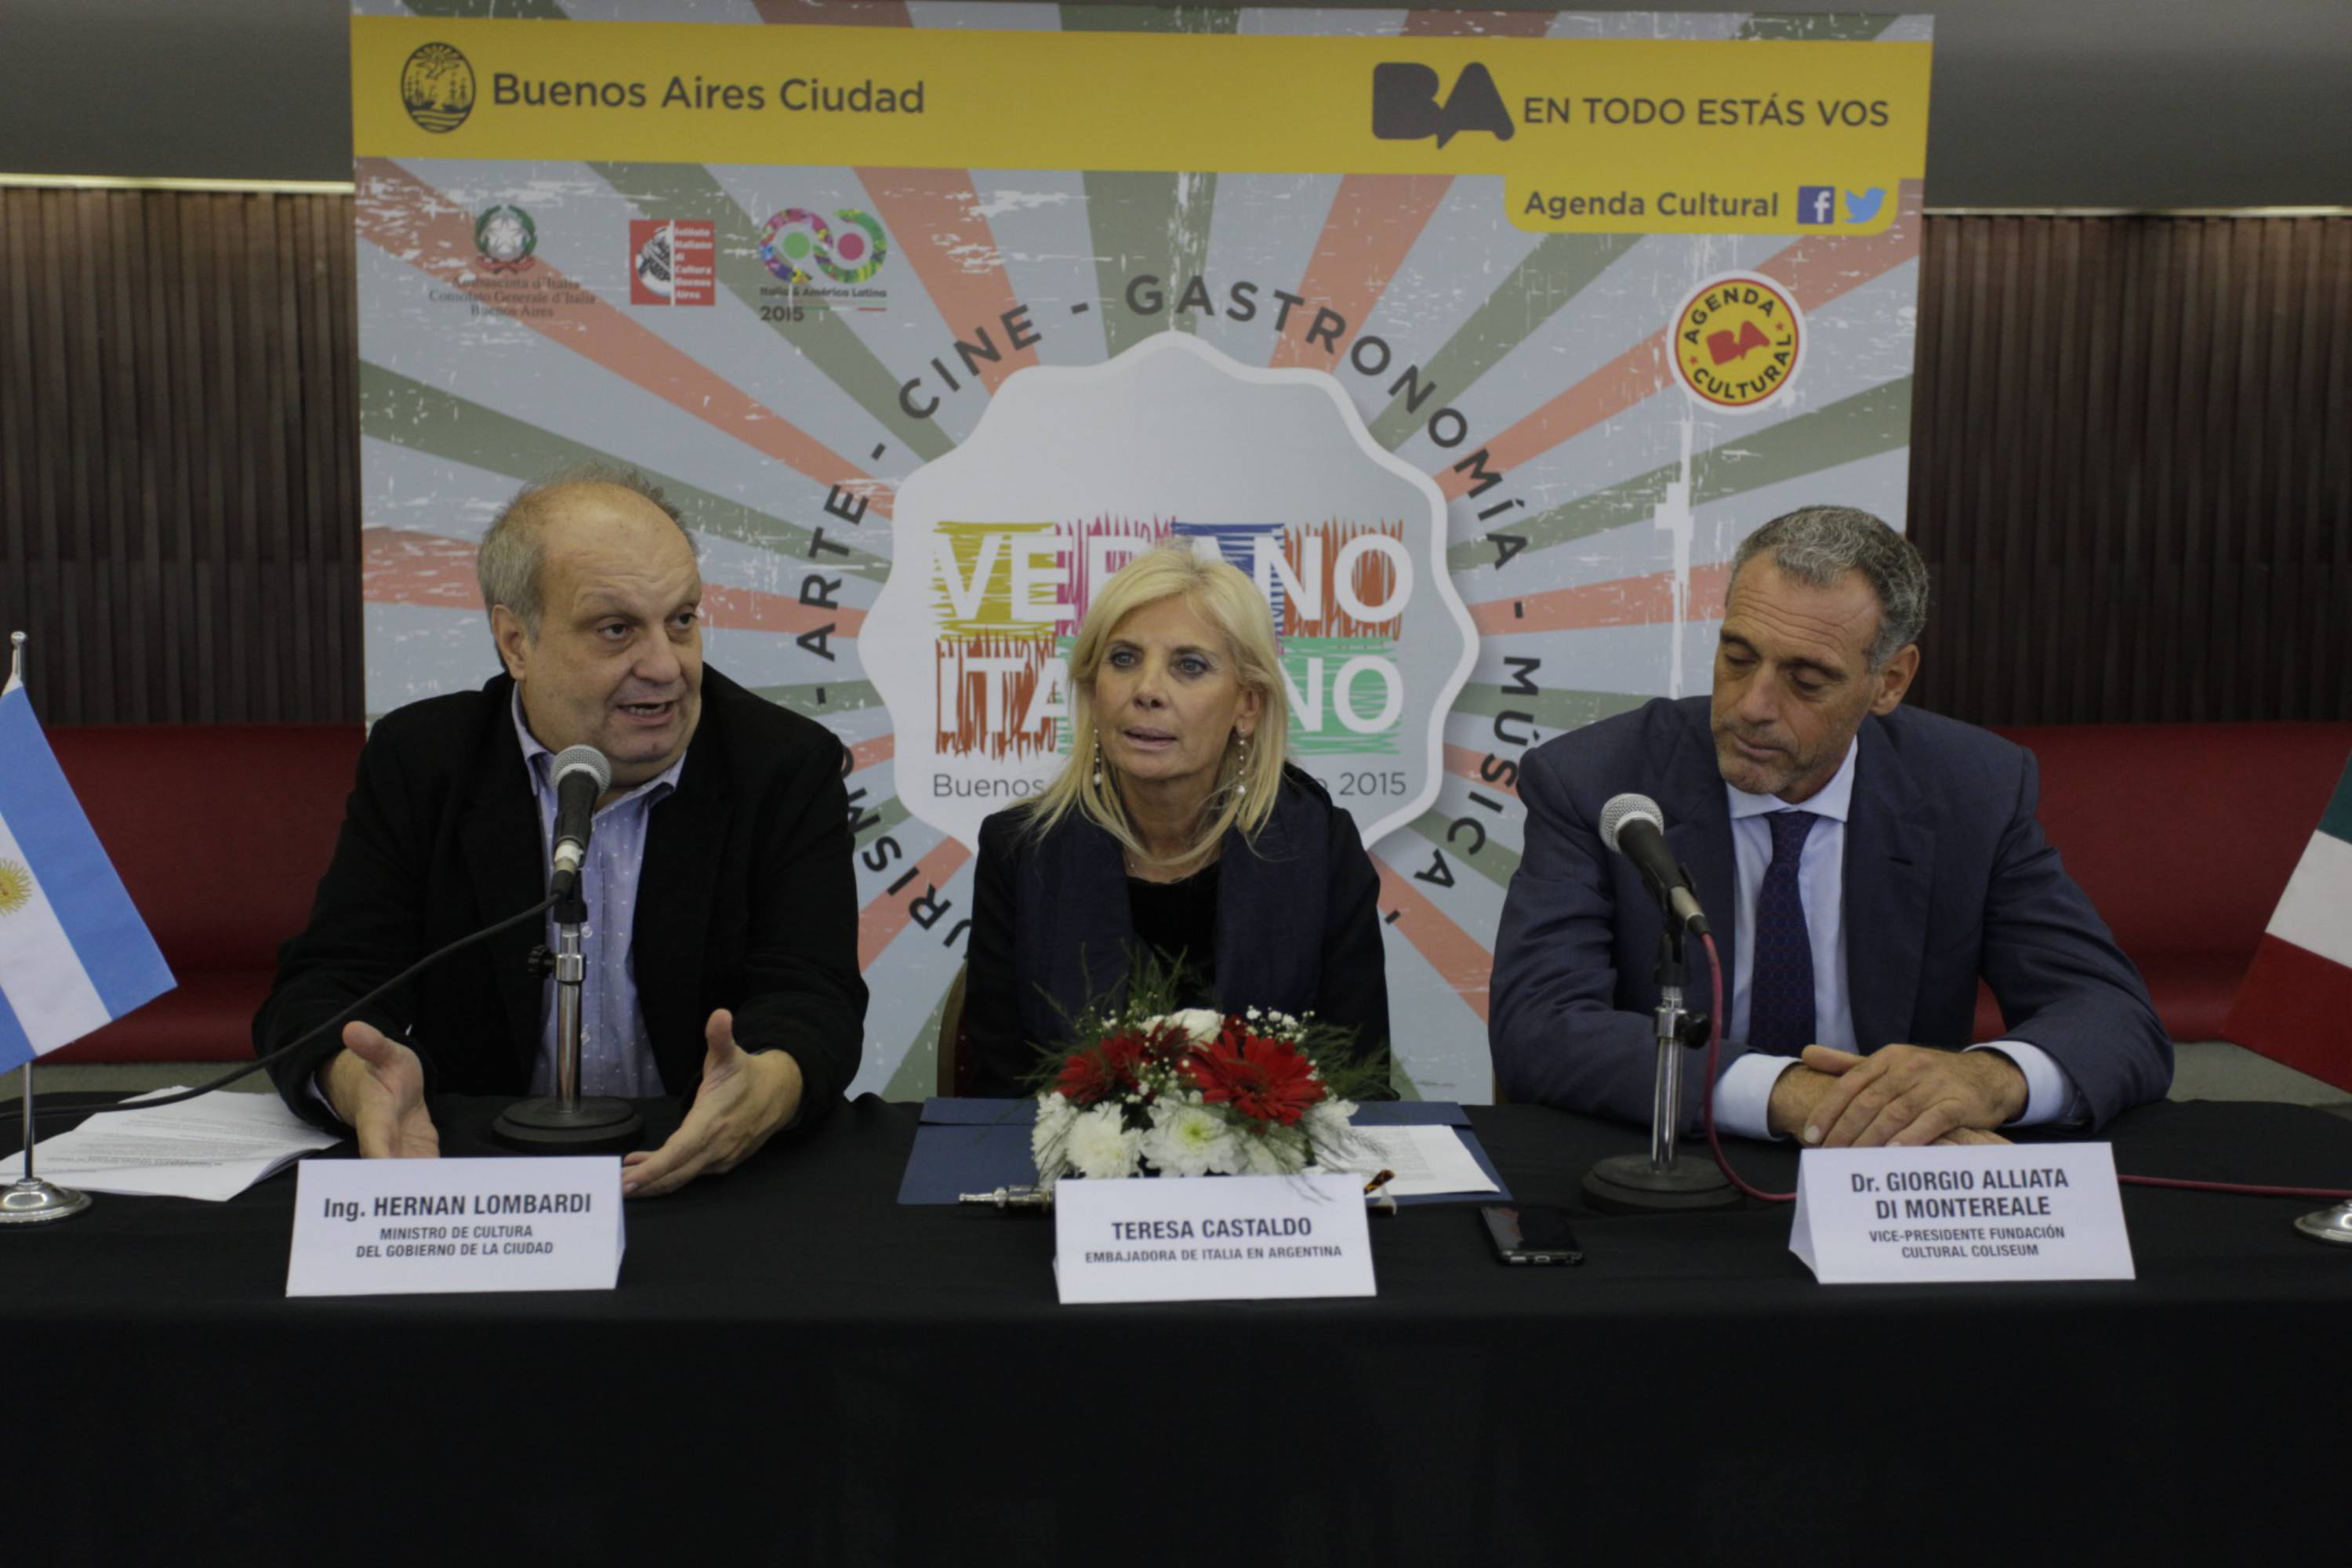 Comienza una nueva edición de "Verano Italiano en Buenos Aires"